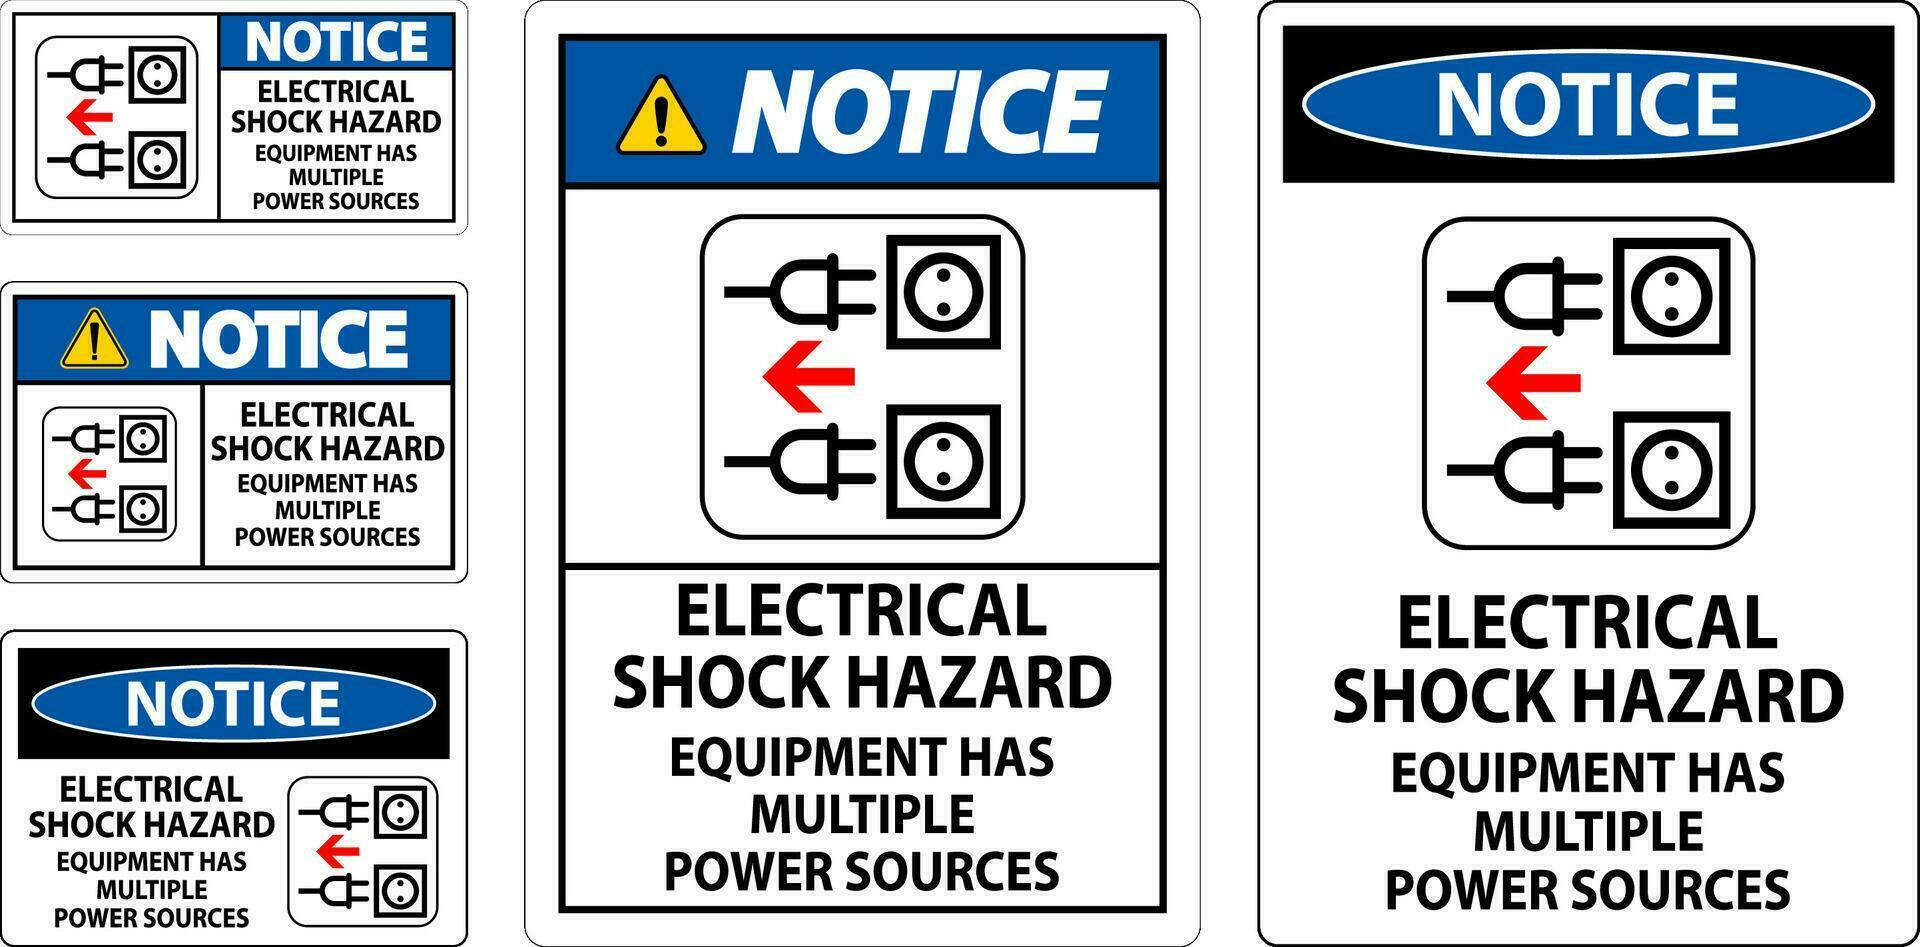 lägga märke till tecken elektrisk chock fara, Utrustning har flera olika kraft källor vektor